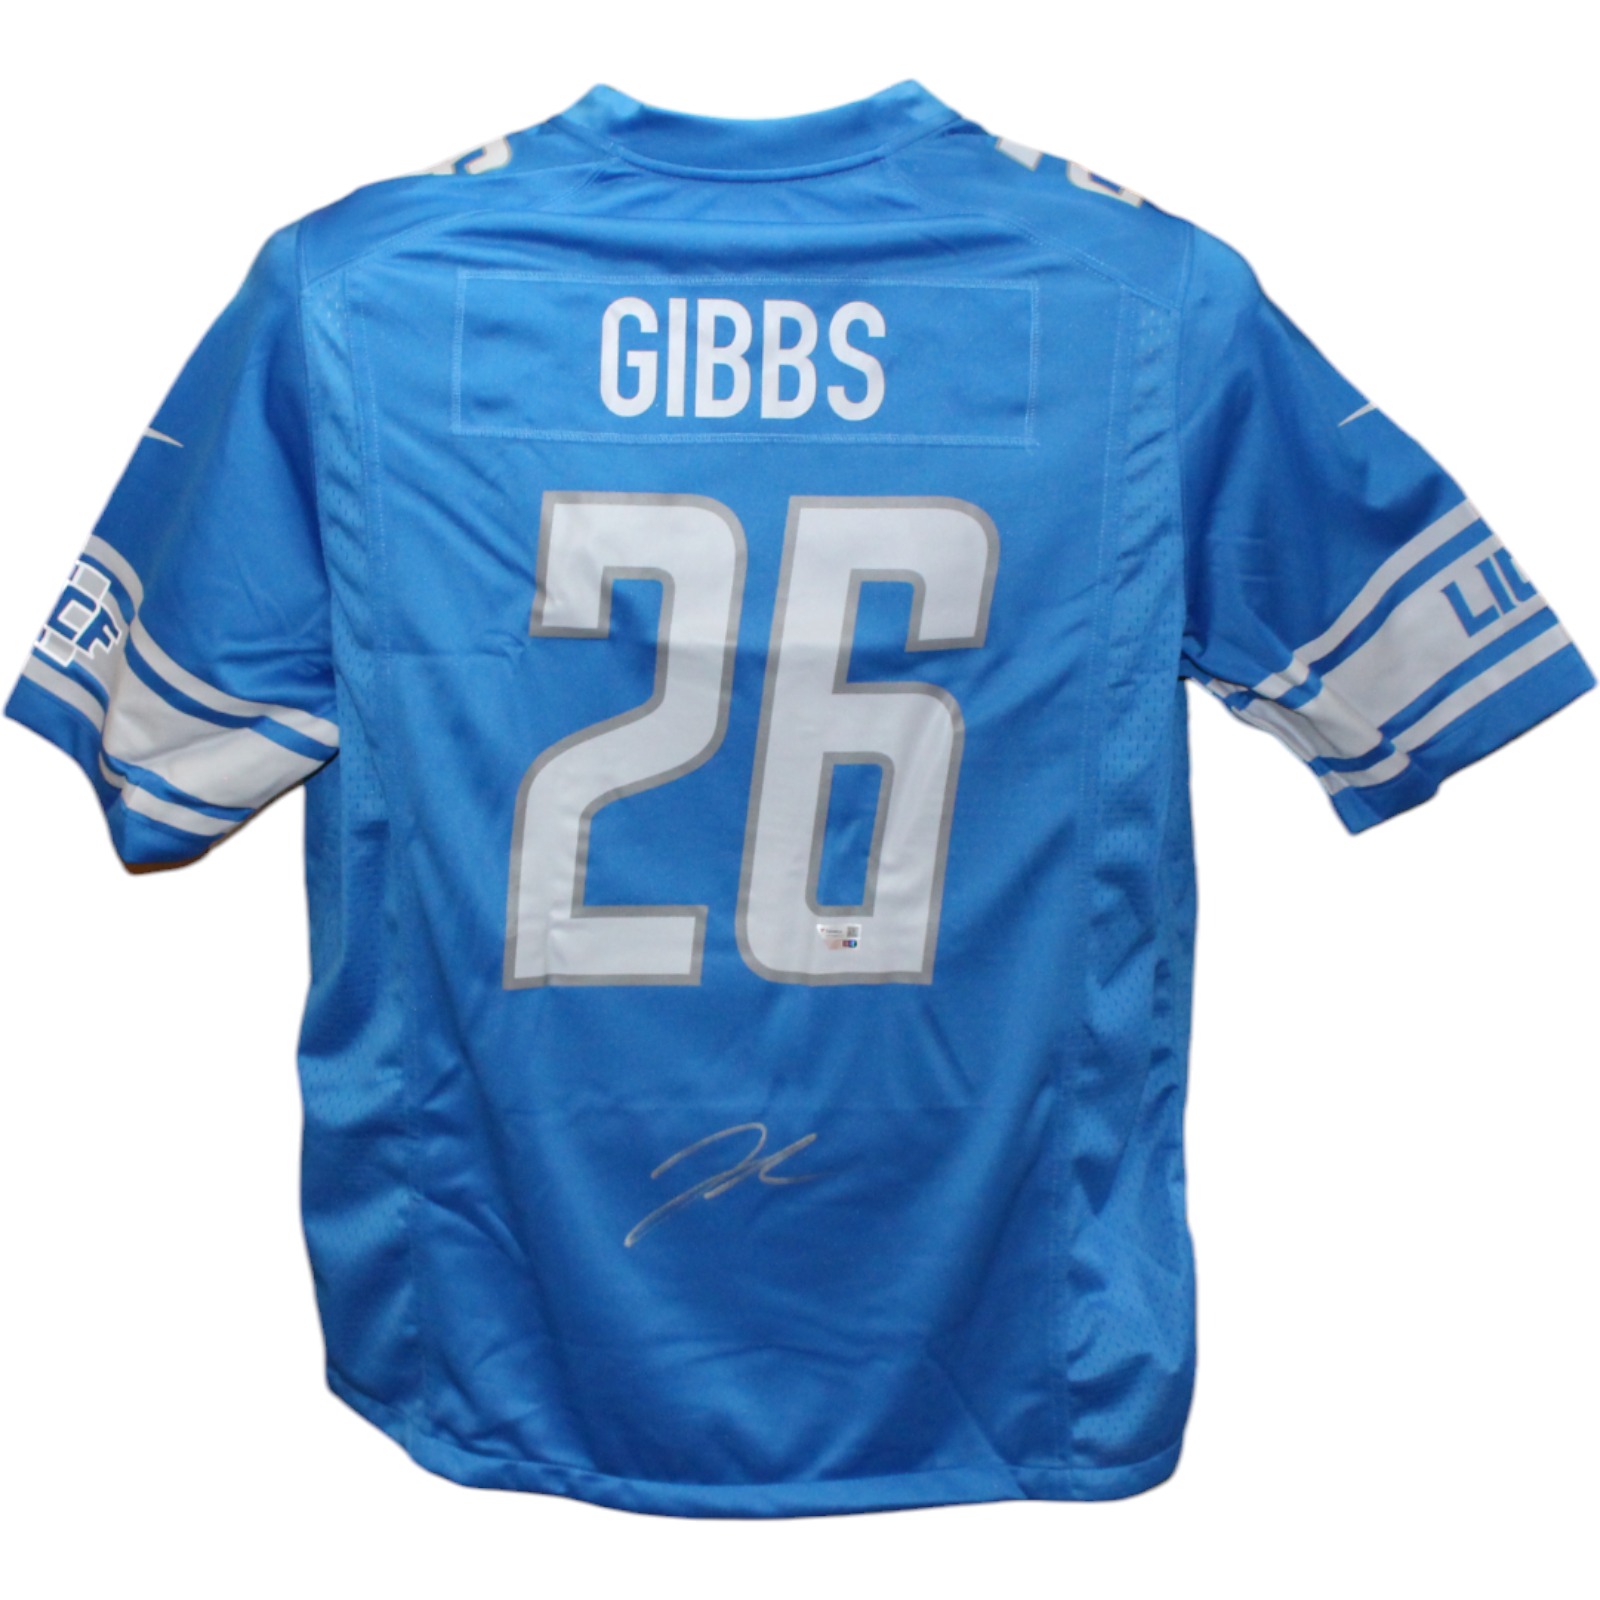 Jahmyr Gibbs Signed Detroit Lions Blue Nike sz XL Jersery FAN